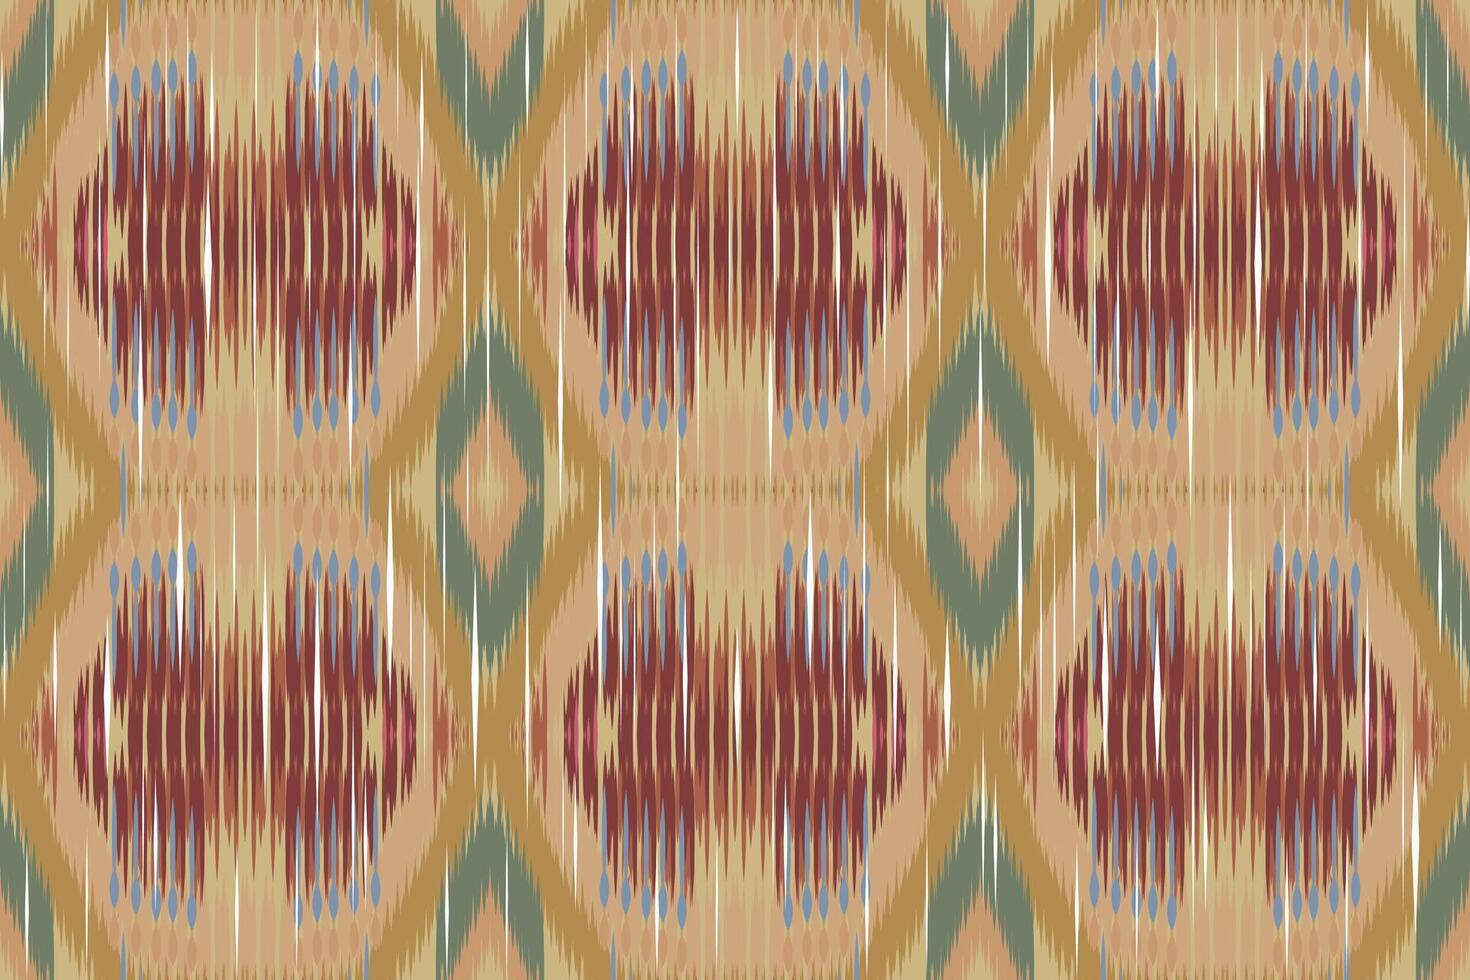 ikat paisley bordado em a tecido dentro Indonésia, Índia e ásia países.geométrico étnico oriental desatado padrão.aztec estilo. ilustração.design para textura,tecido,vestuário,embrulho,tapete. vetor